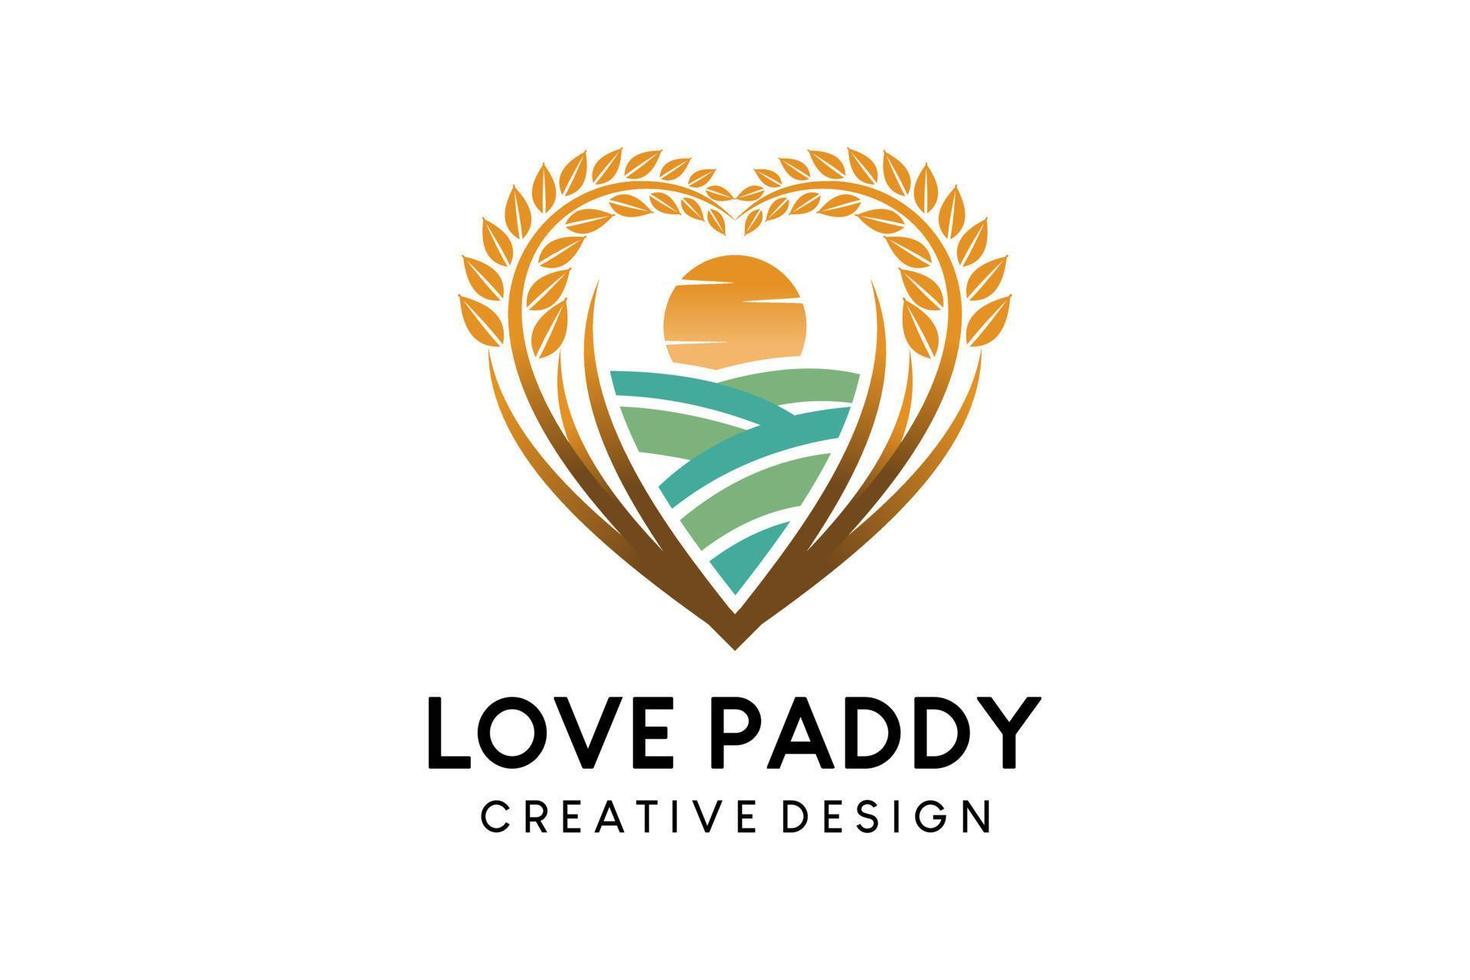 création de logo paddy avec des terres agricoles en forme de coeur, illustration vectorielle du logo paddy farm vecteur